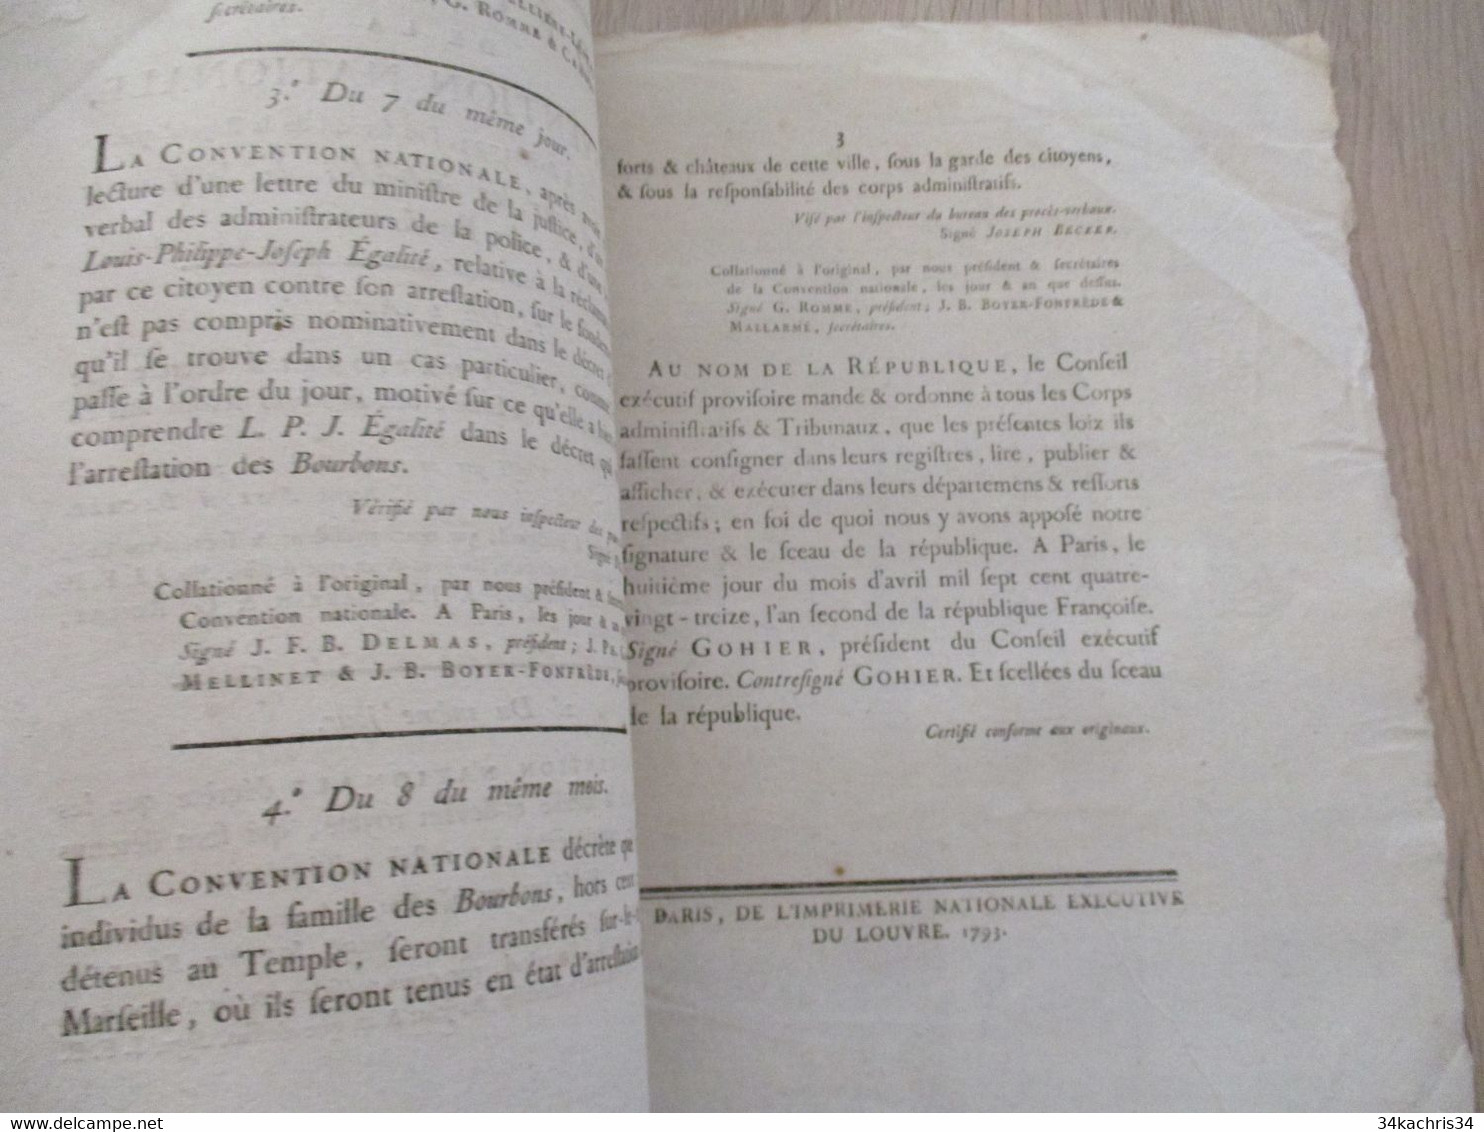 Décret De La Convention Nationale 1793 Révolution Relatifs à Tous Les Individus De La Famille Des Bourbons - Gesetze & Erlasse